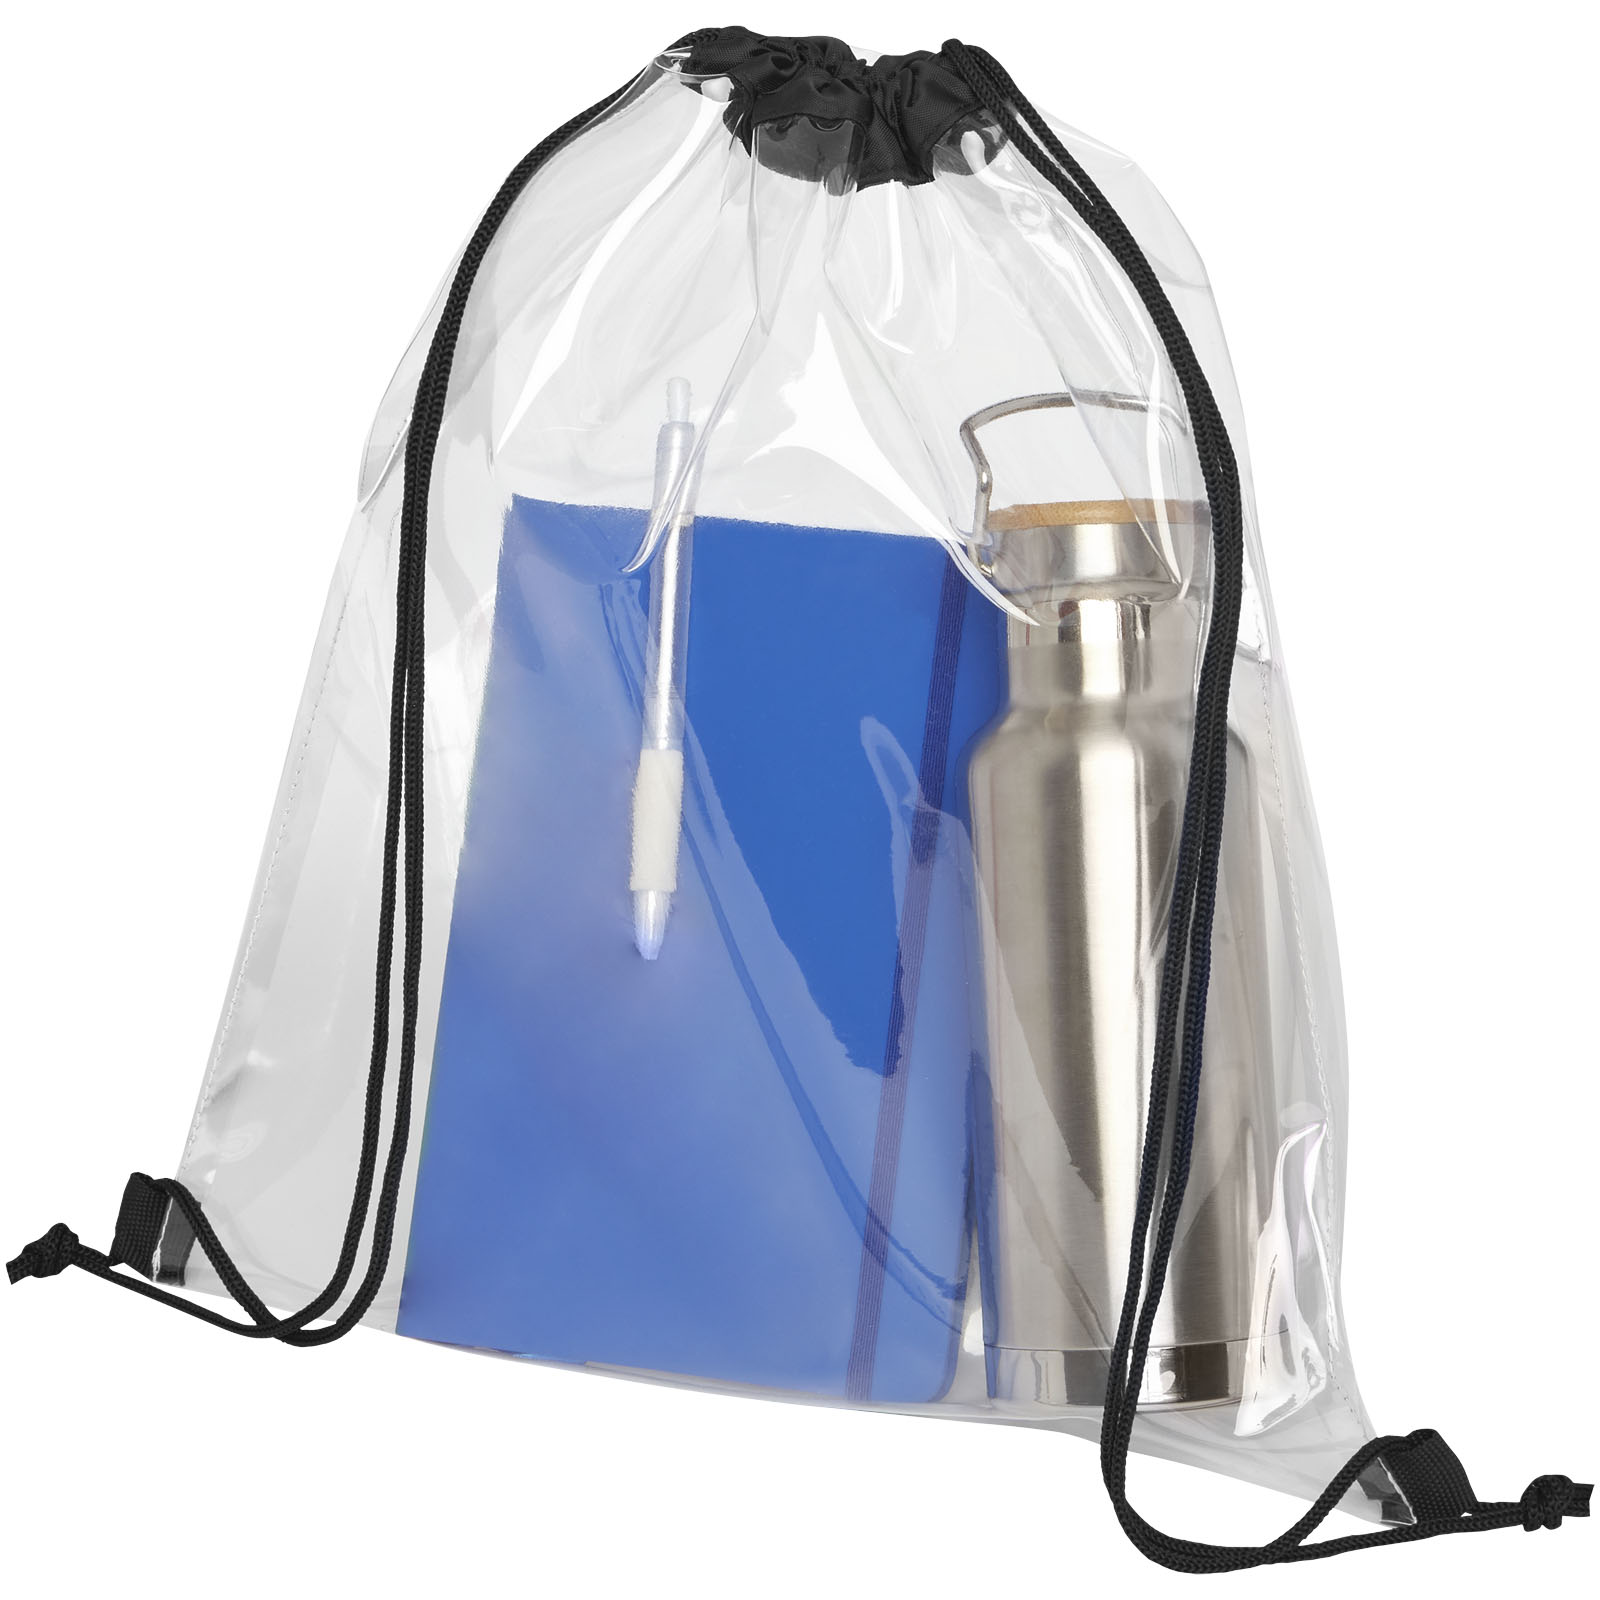 Advertising Drawstring Bags - Lancaster transparent drawstring bag 5L - 2